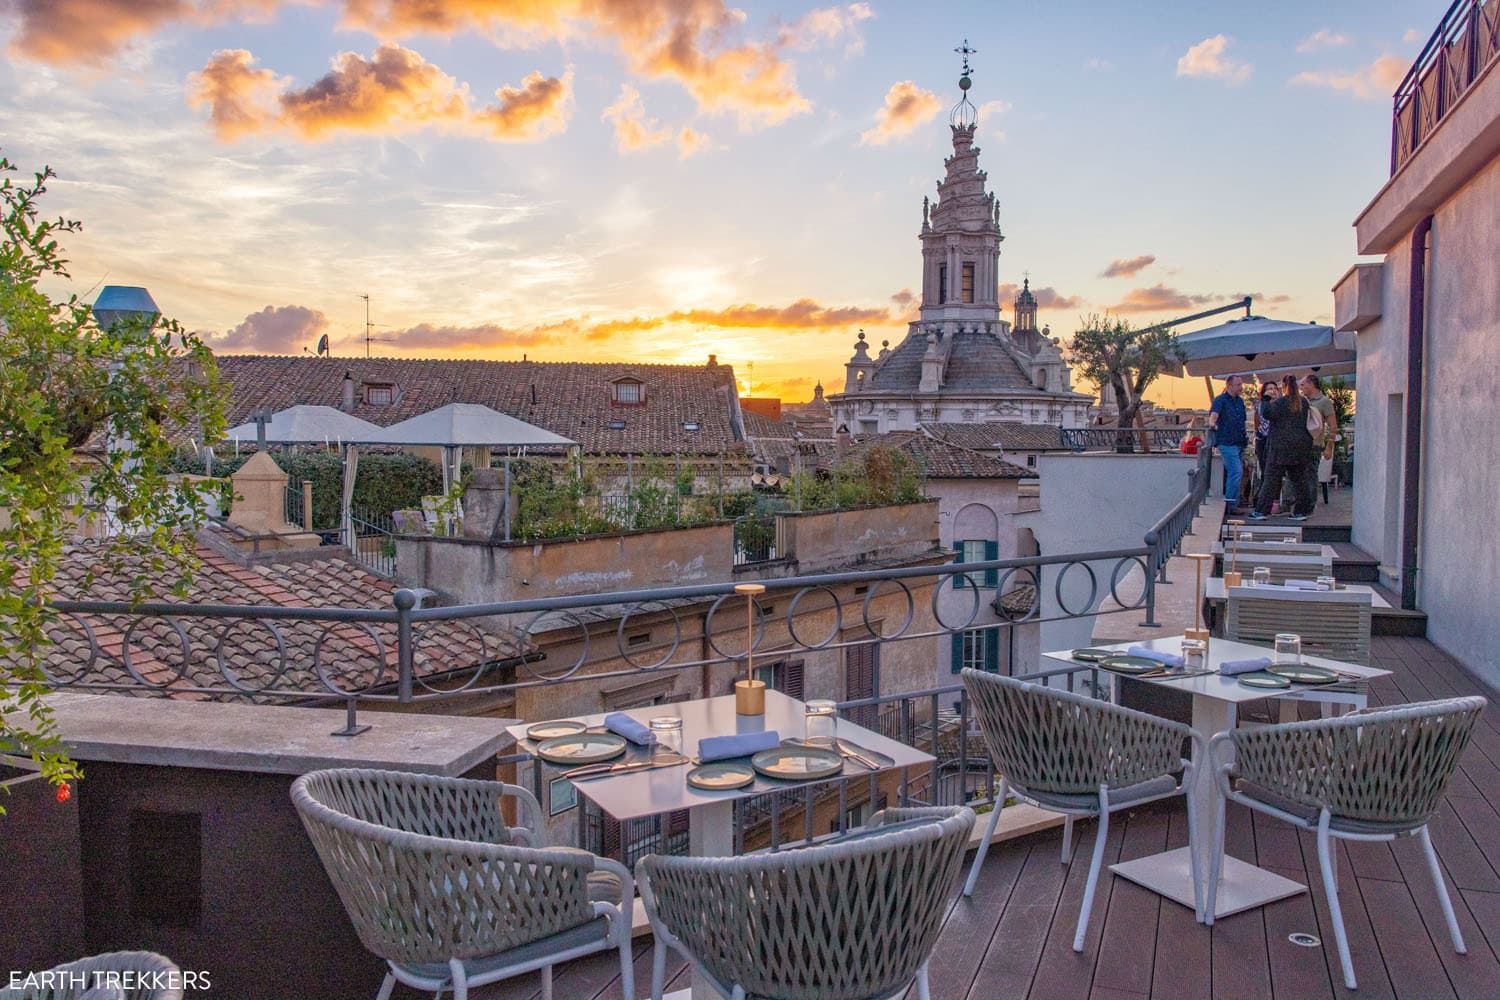 Rooftop Restaurants in Rome